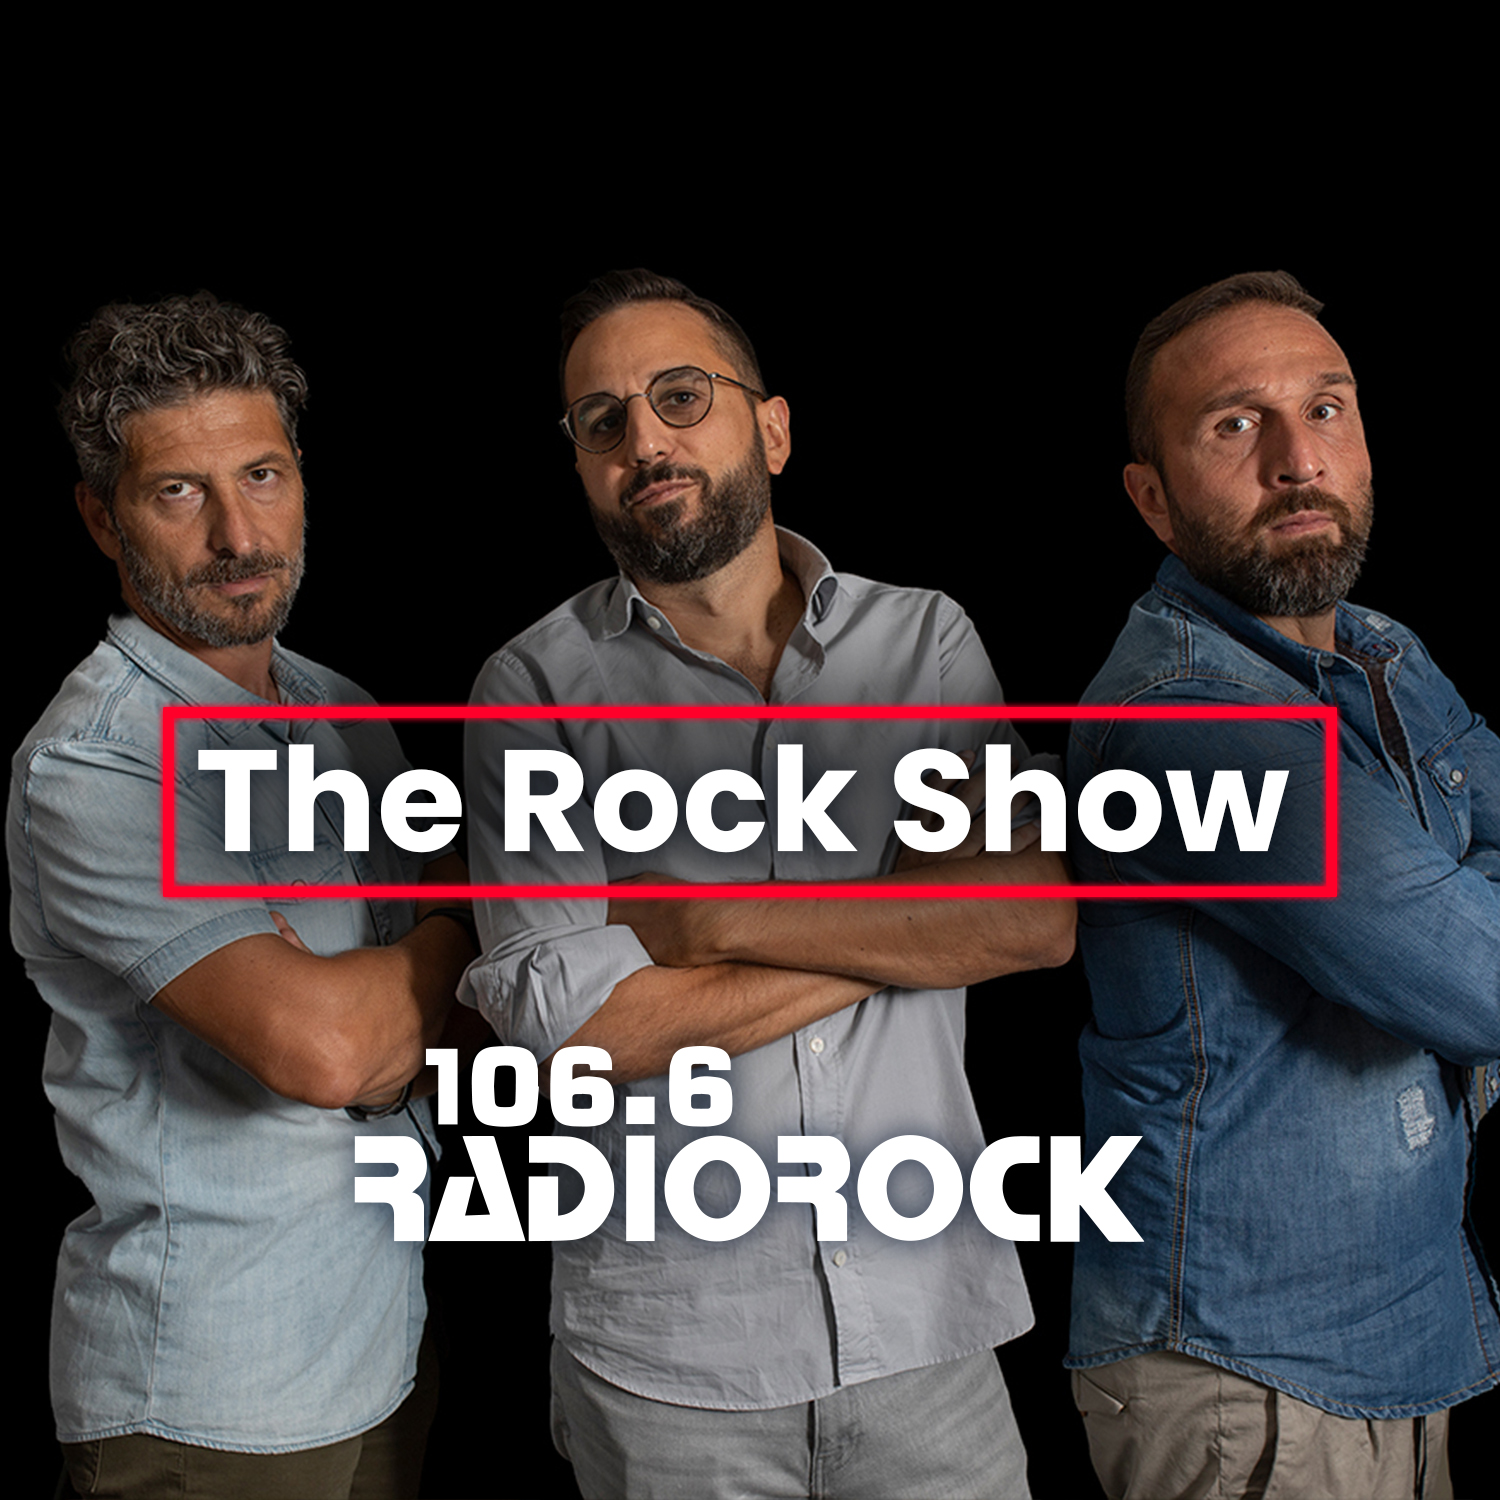 The Rock Show - S06E150: Questa mattina cosa facciamo? 3899106600! (04-04-23)